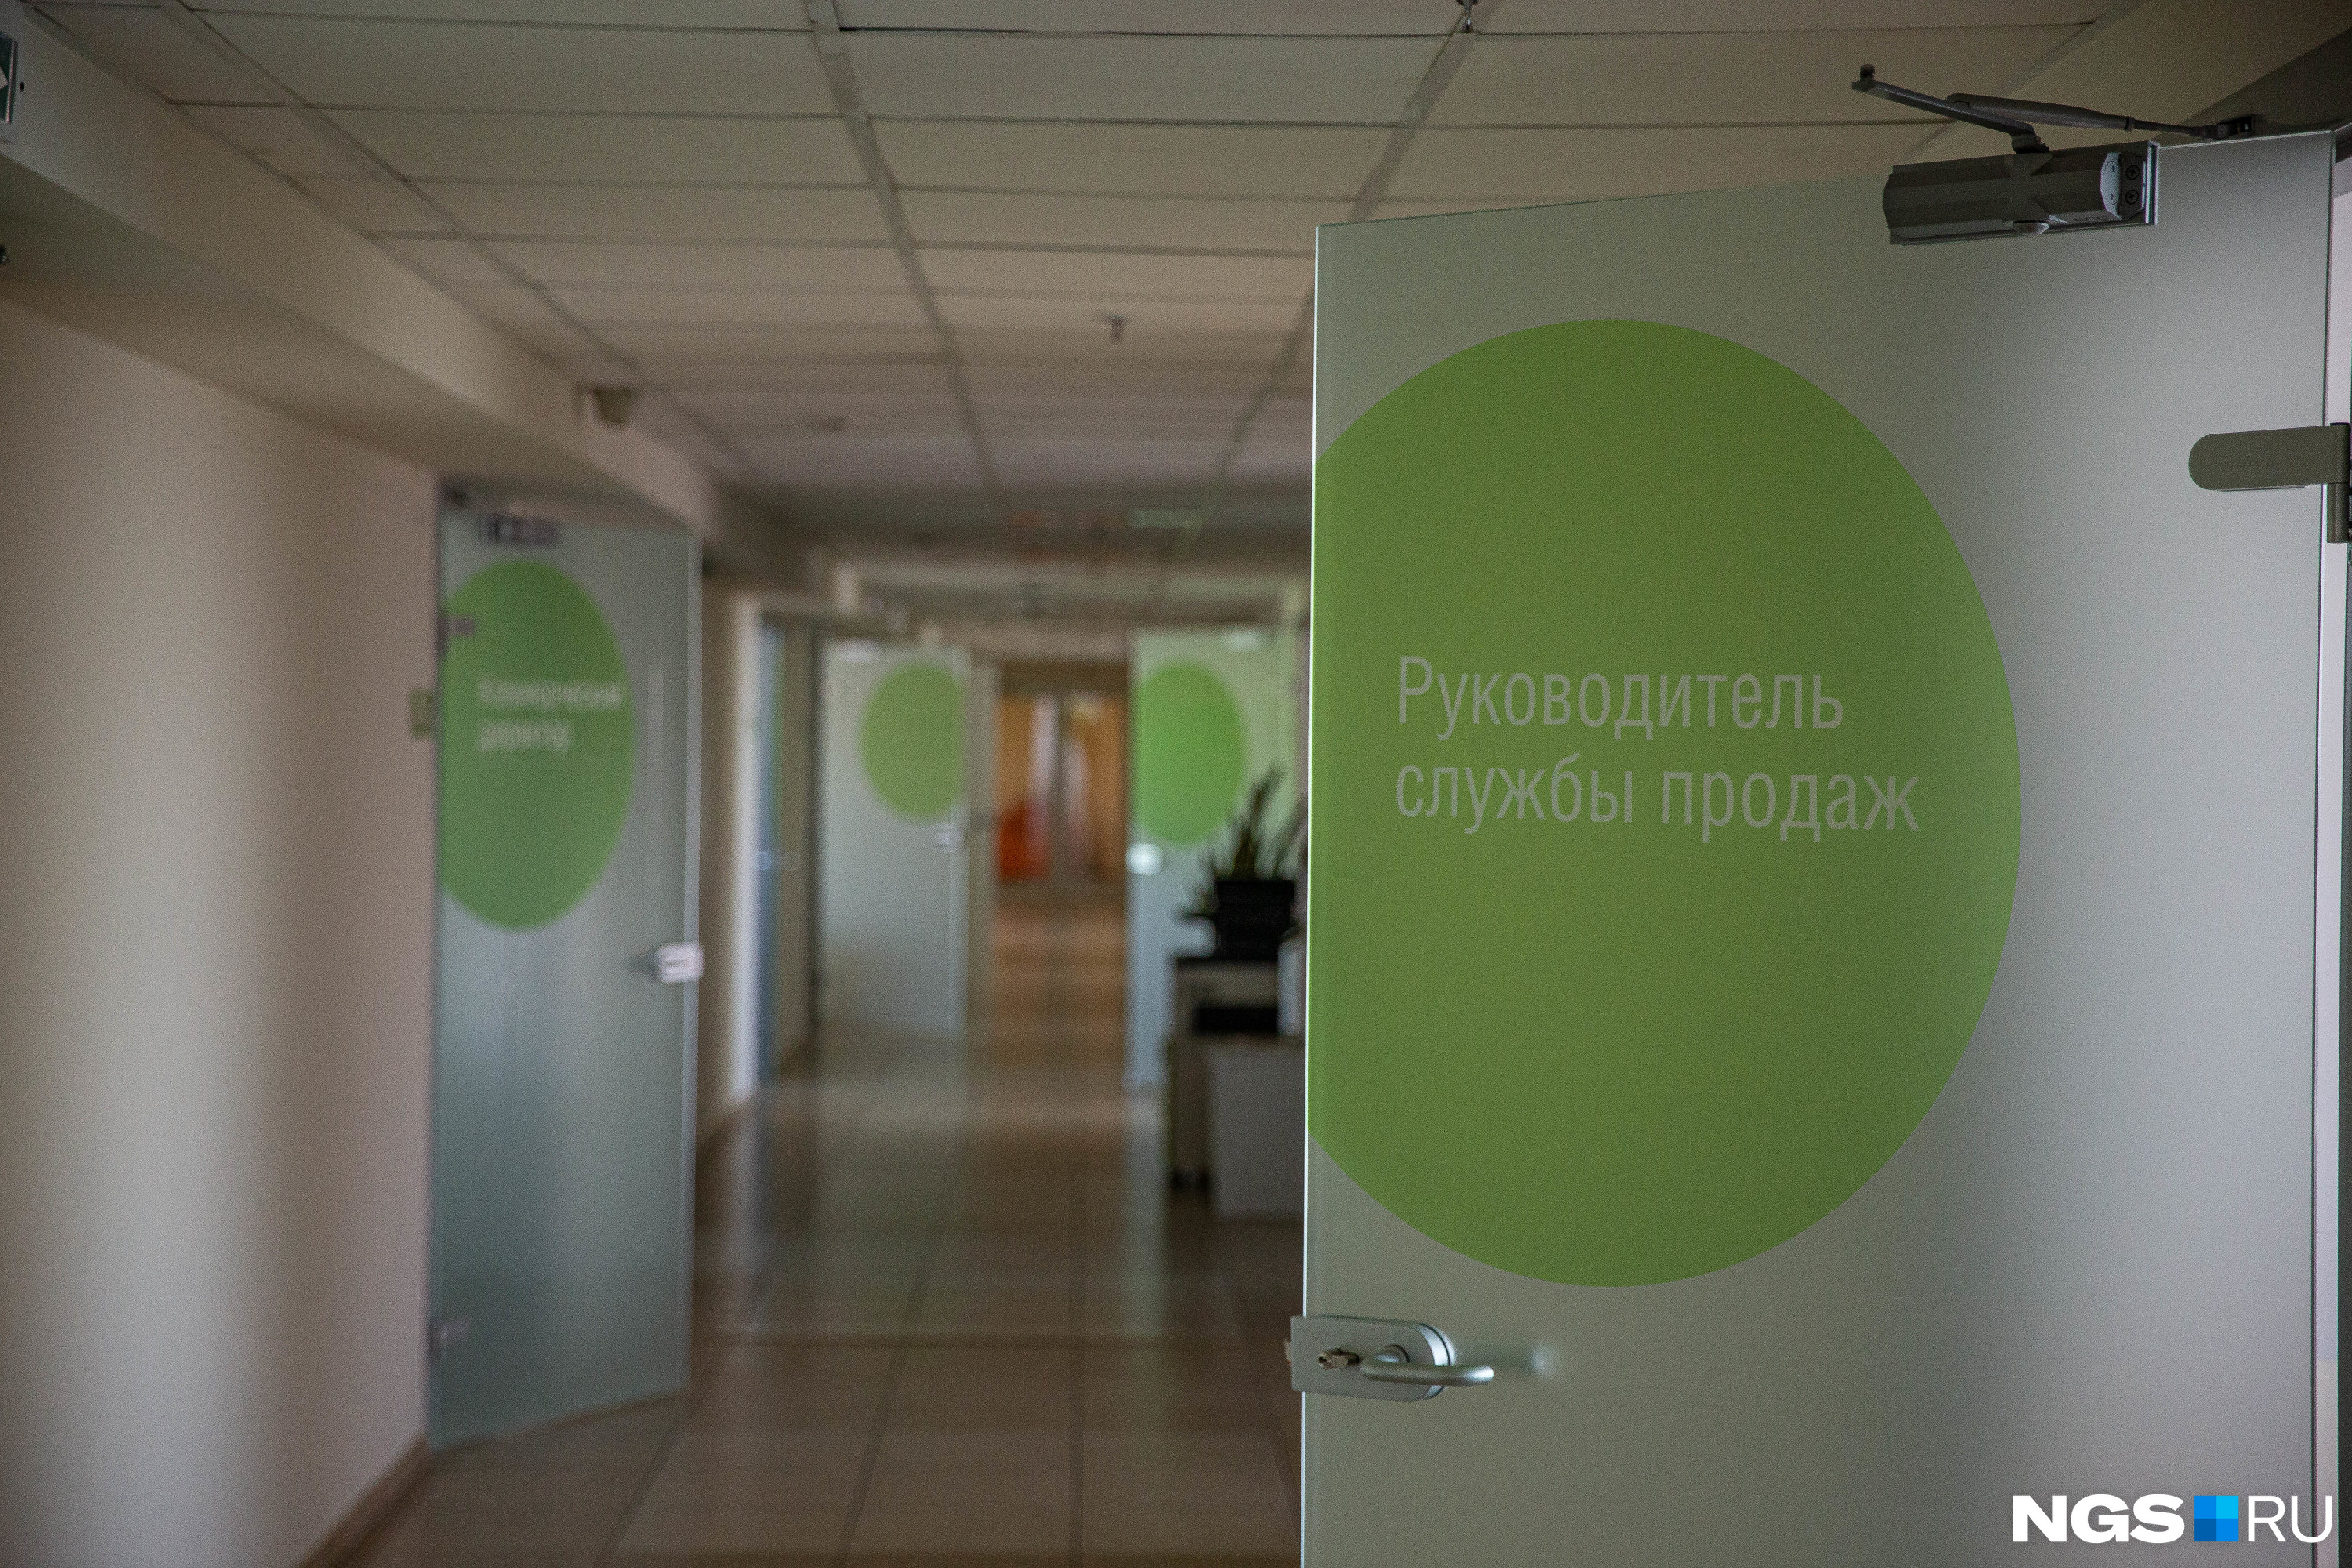 В Новосибирске в 2ГИС работают 870 человек в двух офисах, по стране — 1900 собственных сотрудников